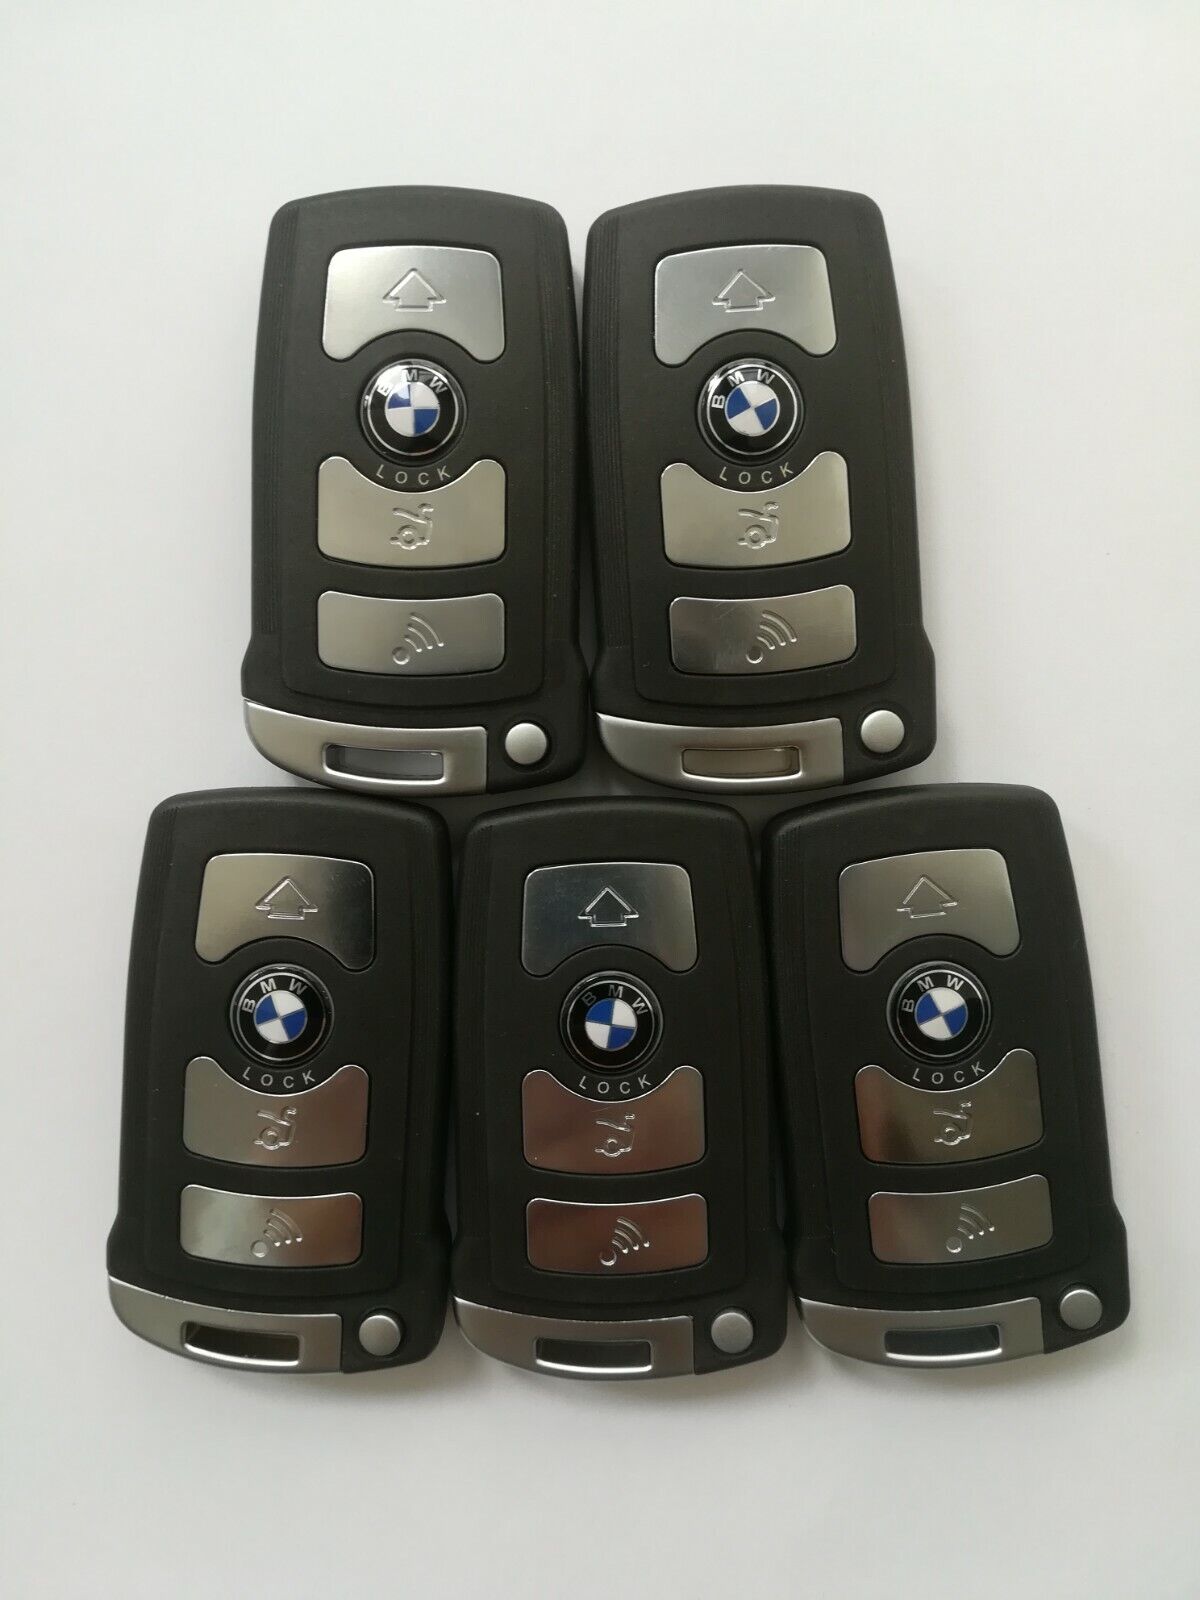 5pcs Remote Key shell for BMW 760Li 760i 750Li 750i 740i 740Li 745i LX 8766 S